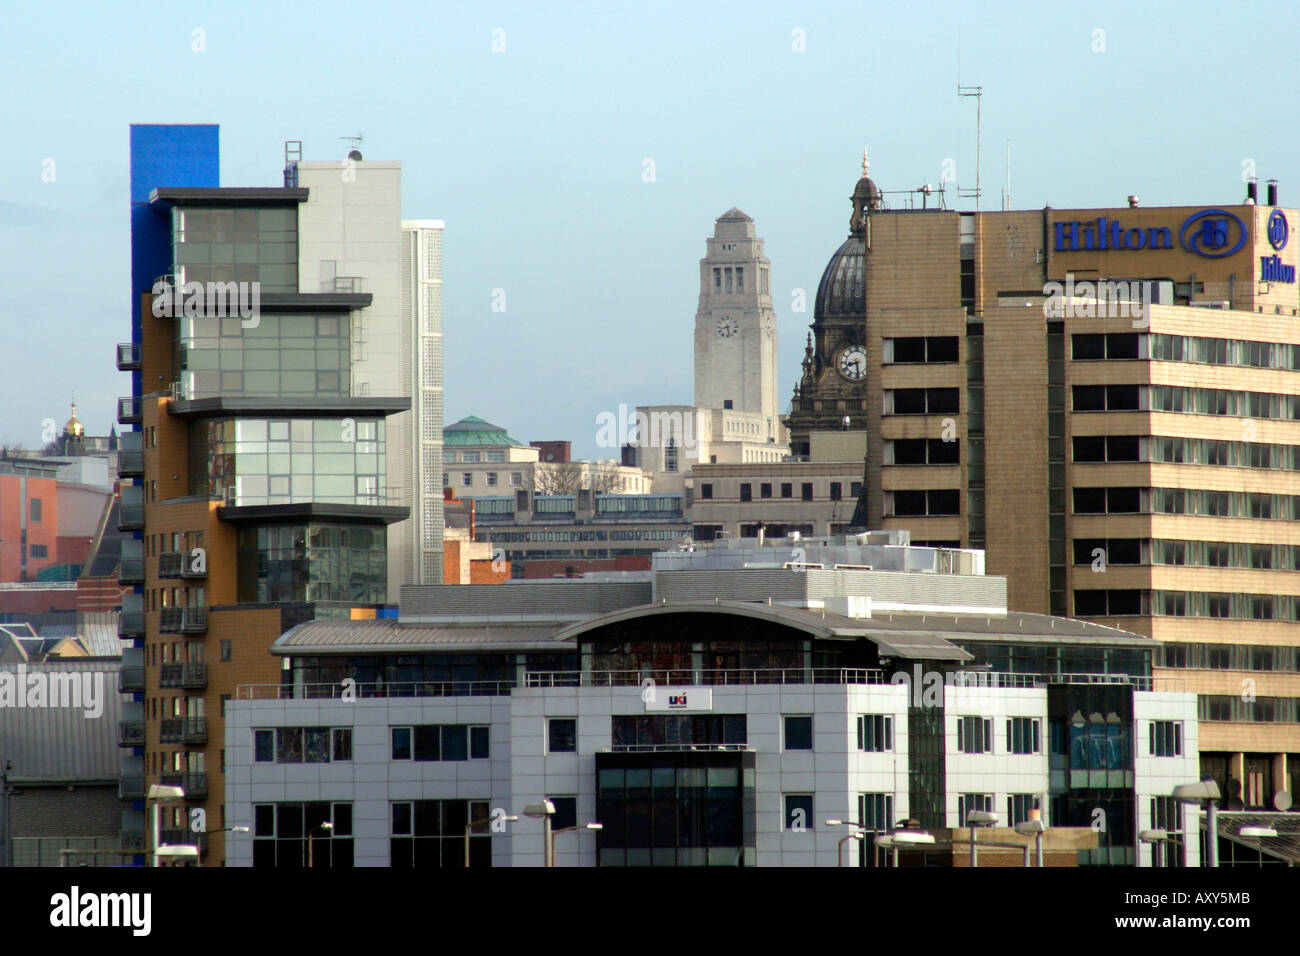 Toits de Leeds Dewsbury Road Towers de Leeds Town Hall et clairement visible de l'université Banque D'Images